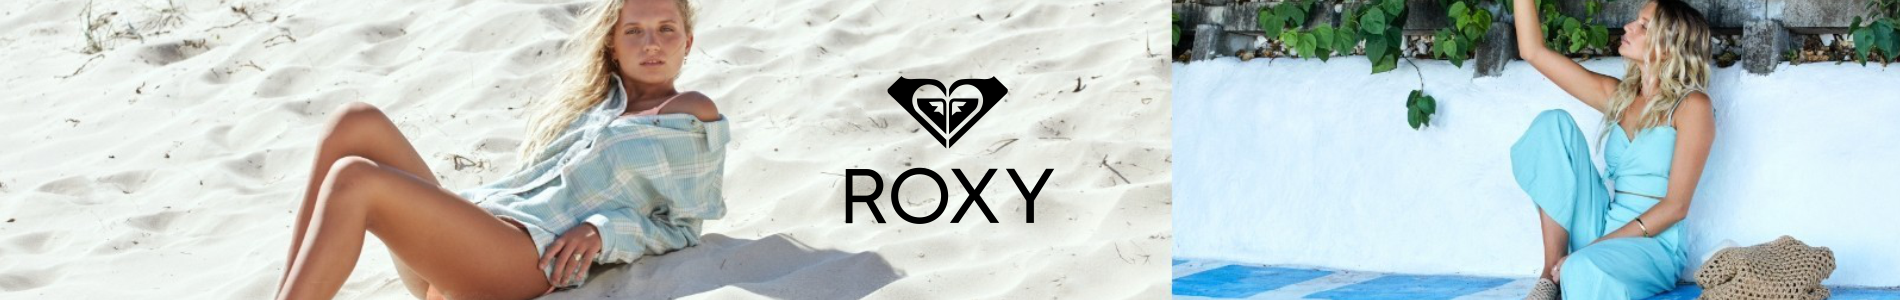 Roxy Kayak Snowboard Lifestyle Giyim, Çanta ve Ekipmanları